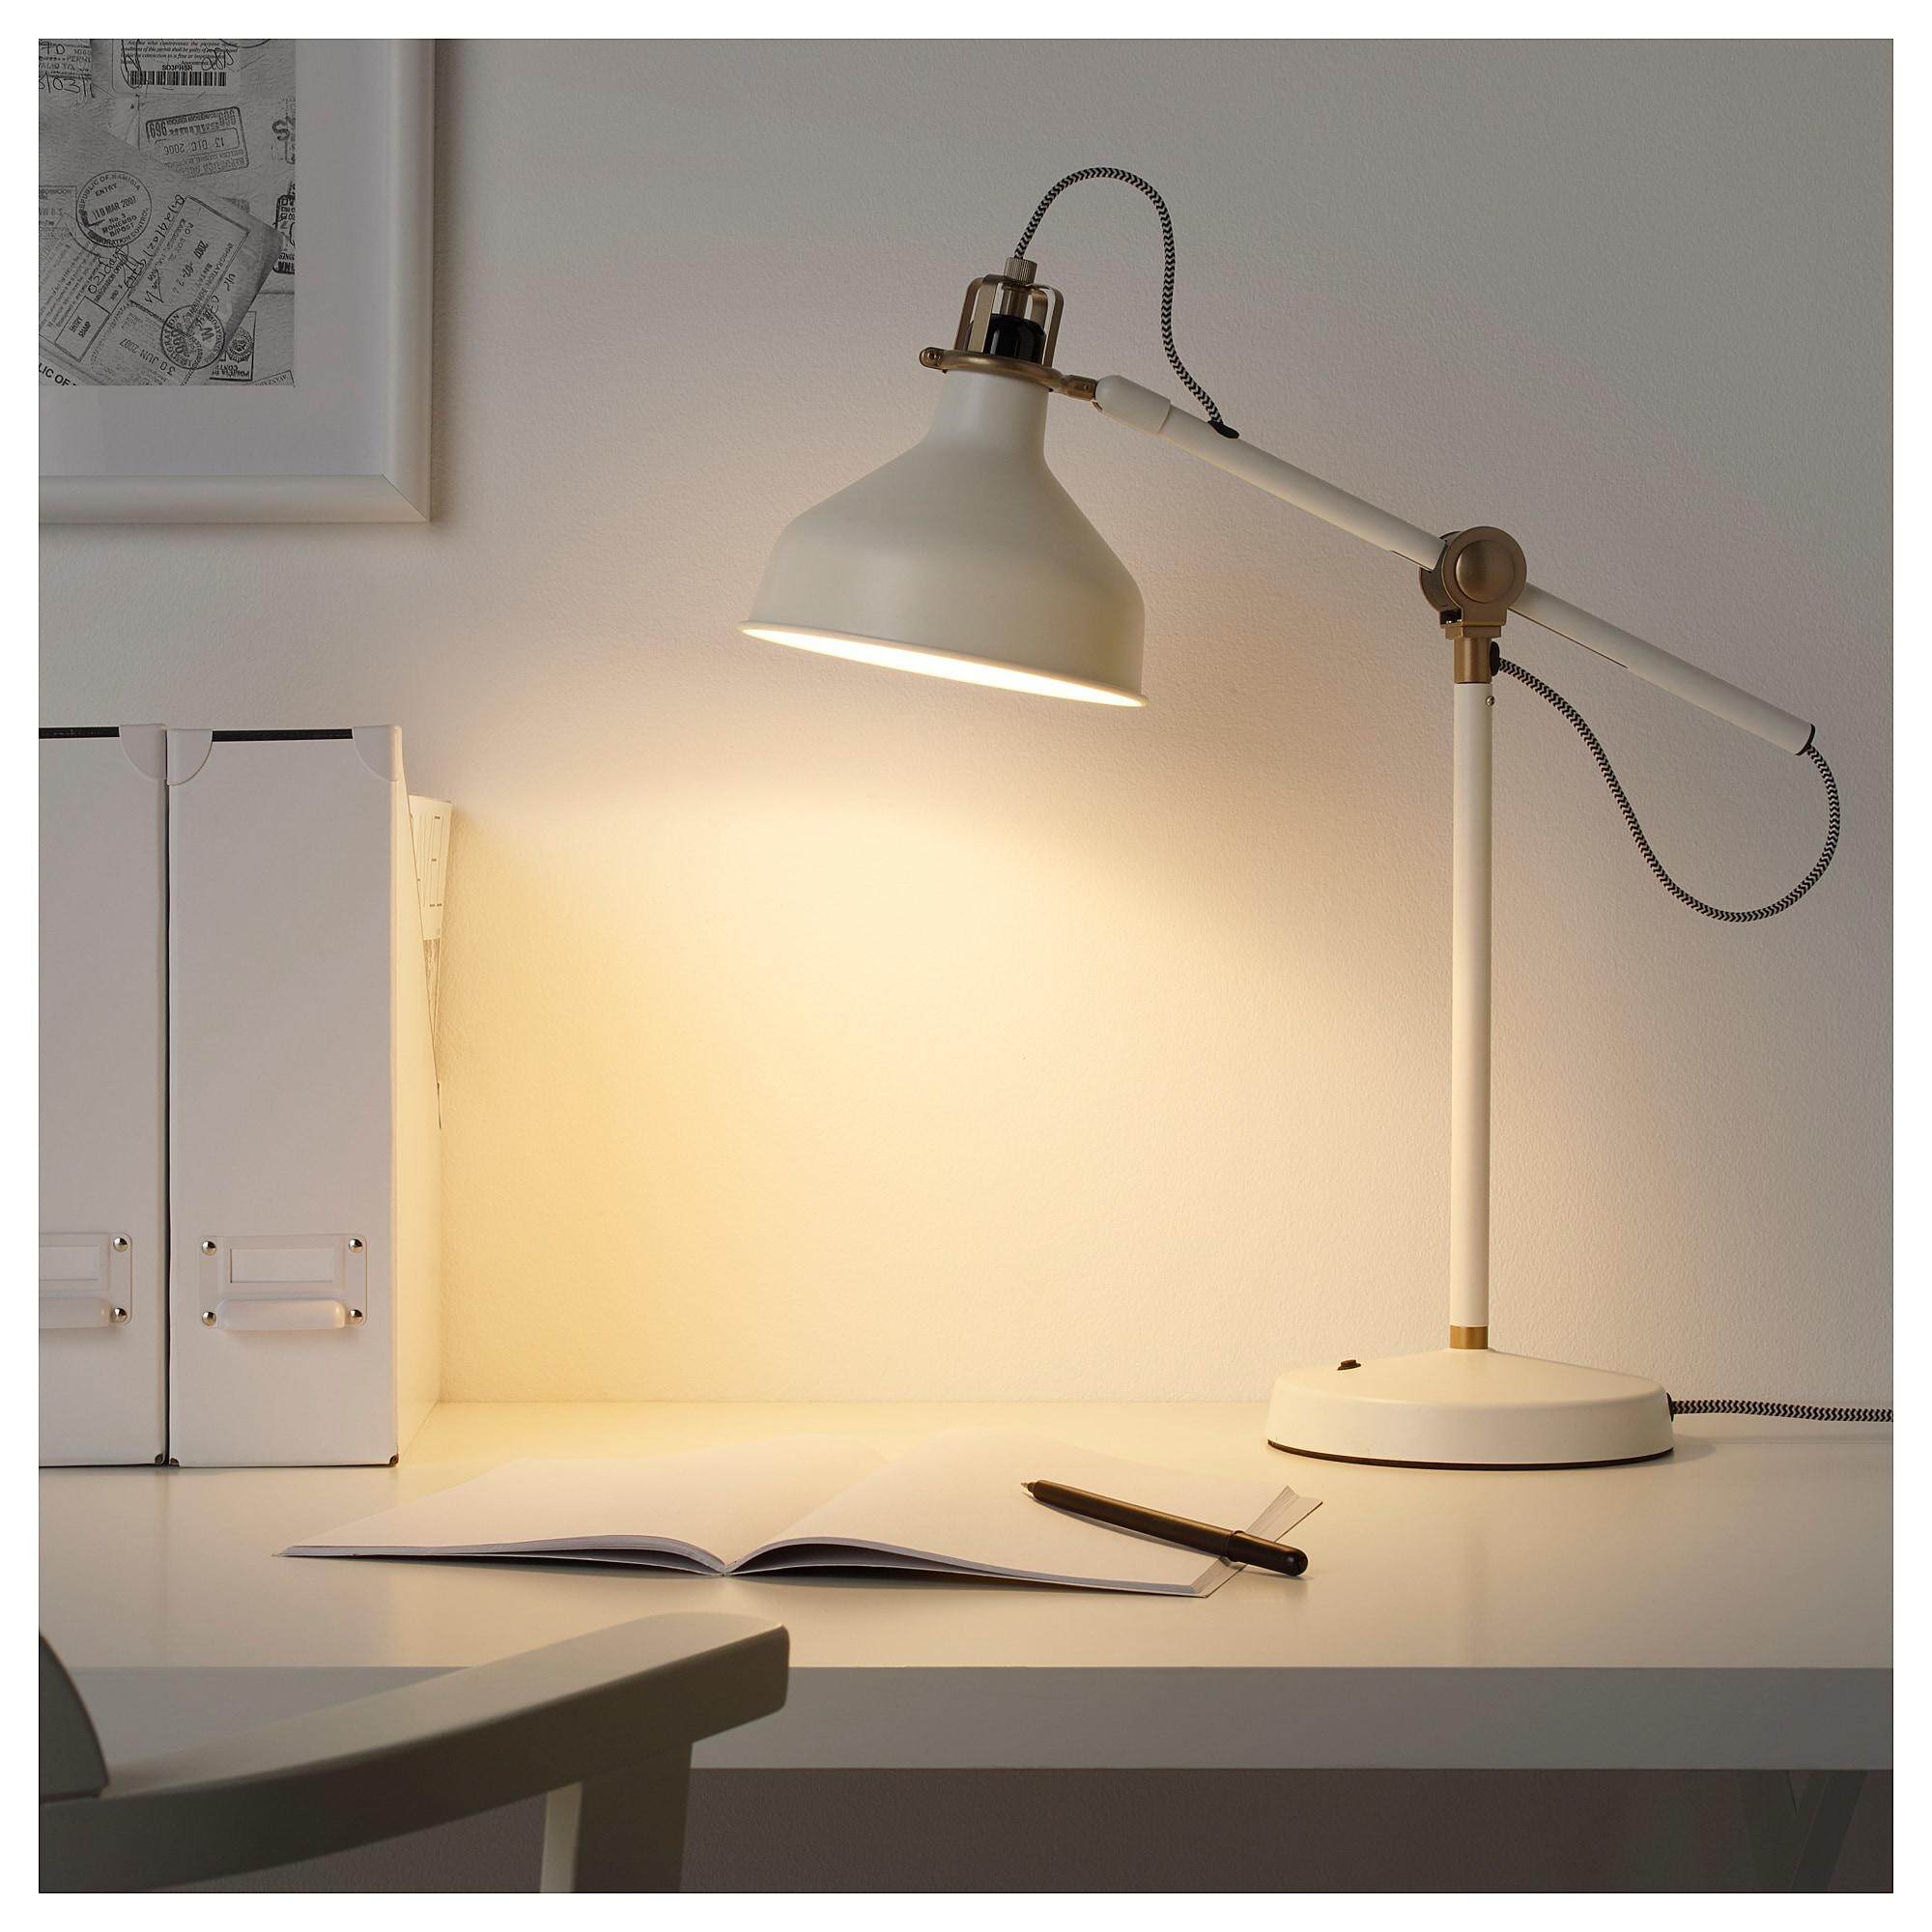 RANARP รอนนาร์ป โคมไฟโต๊ะทำงาน ออฟไวท์ ปรับทิศทางแสงได้ง่าย โดยปรับที่แขนโคมและโป๊ะโคมให้แสงสว่างตรงจุด จาก IKEA